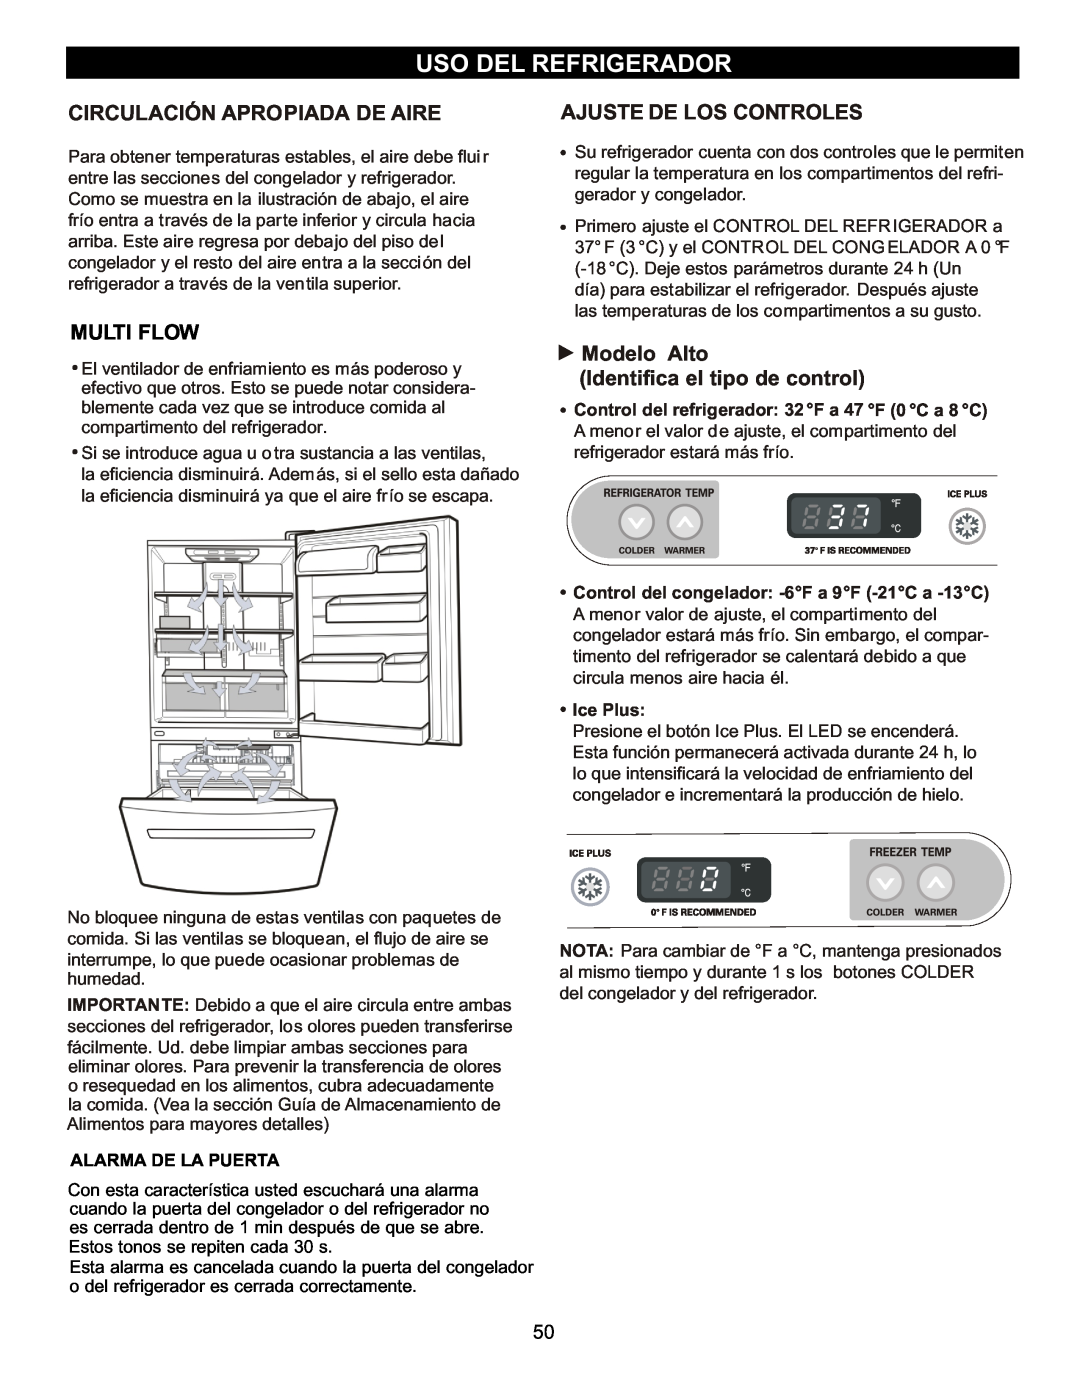 LG Electronics LBC2252 Uso Del Refrigerador, Circulación Apropiada De Aire, Modelo Alto Identifica el tipo de control 